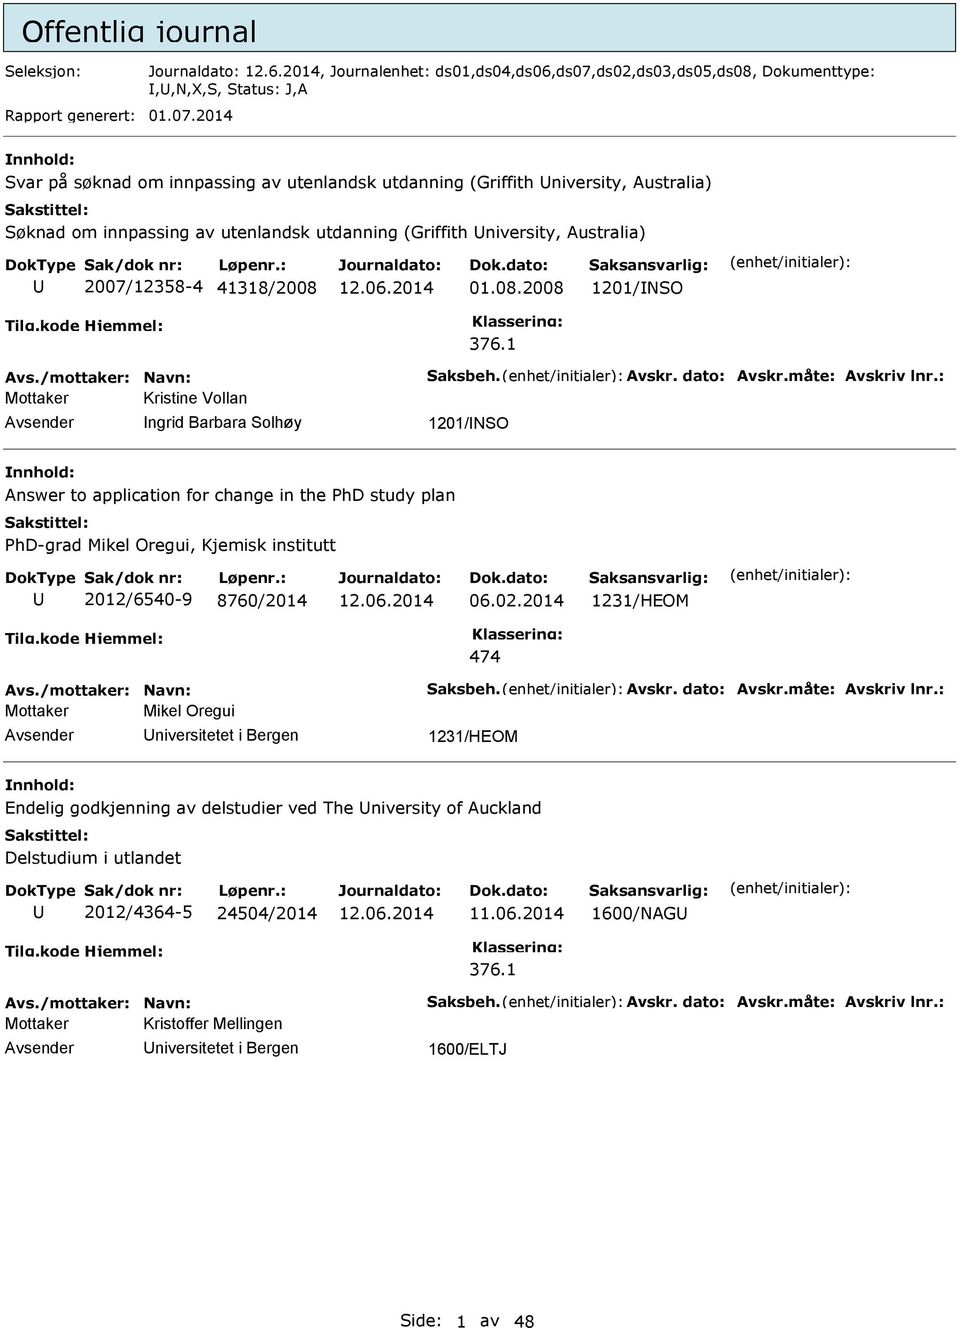 2014 Svar på søknad om innpassing av utenlandsk utdanning (Griffith niversity, Australia) Søknad om innpassing av utenlandsk utdanning (Griffith niversity, Australia) 2007/12358-4 41318/2008 